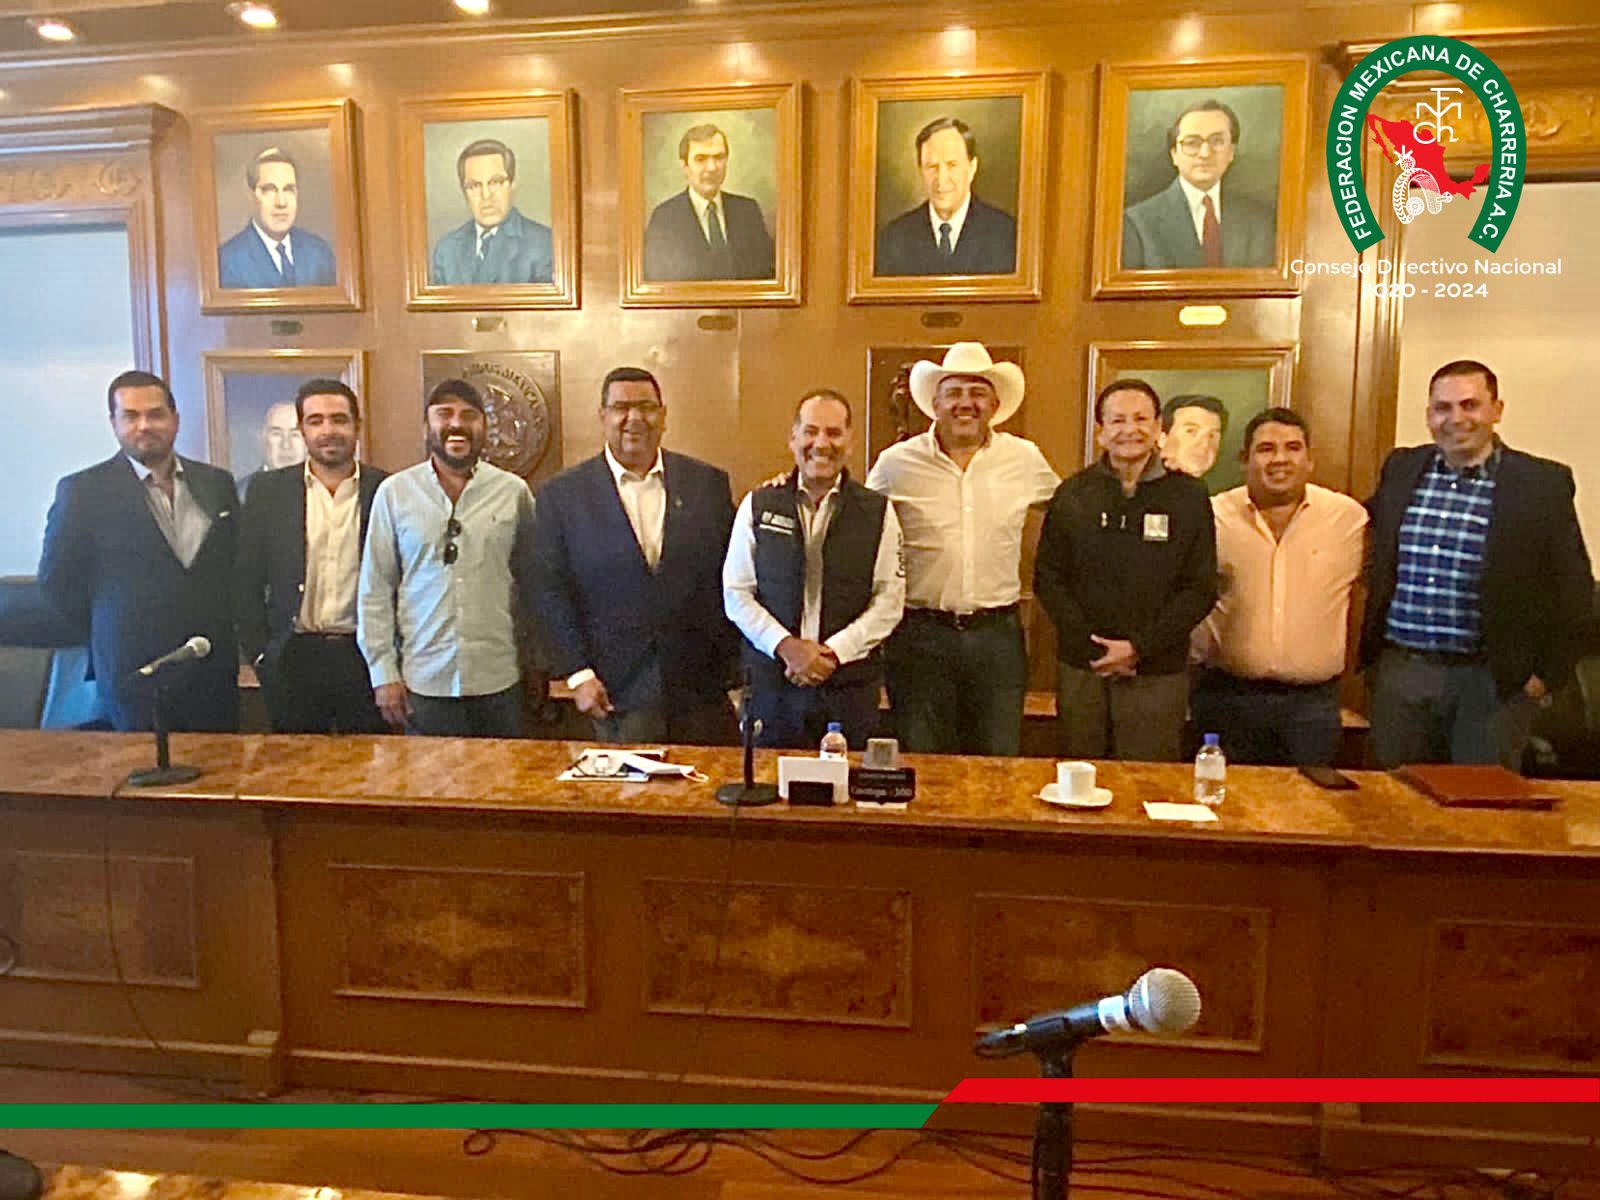 Importante reunión sostuvo el presidente de la Federación con el Gobernador del Estado de Aguascalientes, Martín Orozco Sandoval